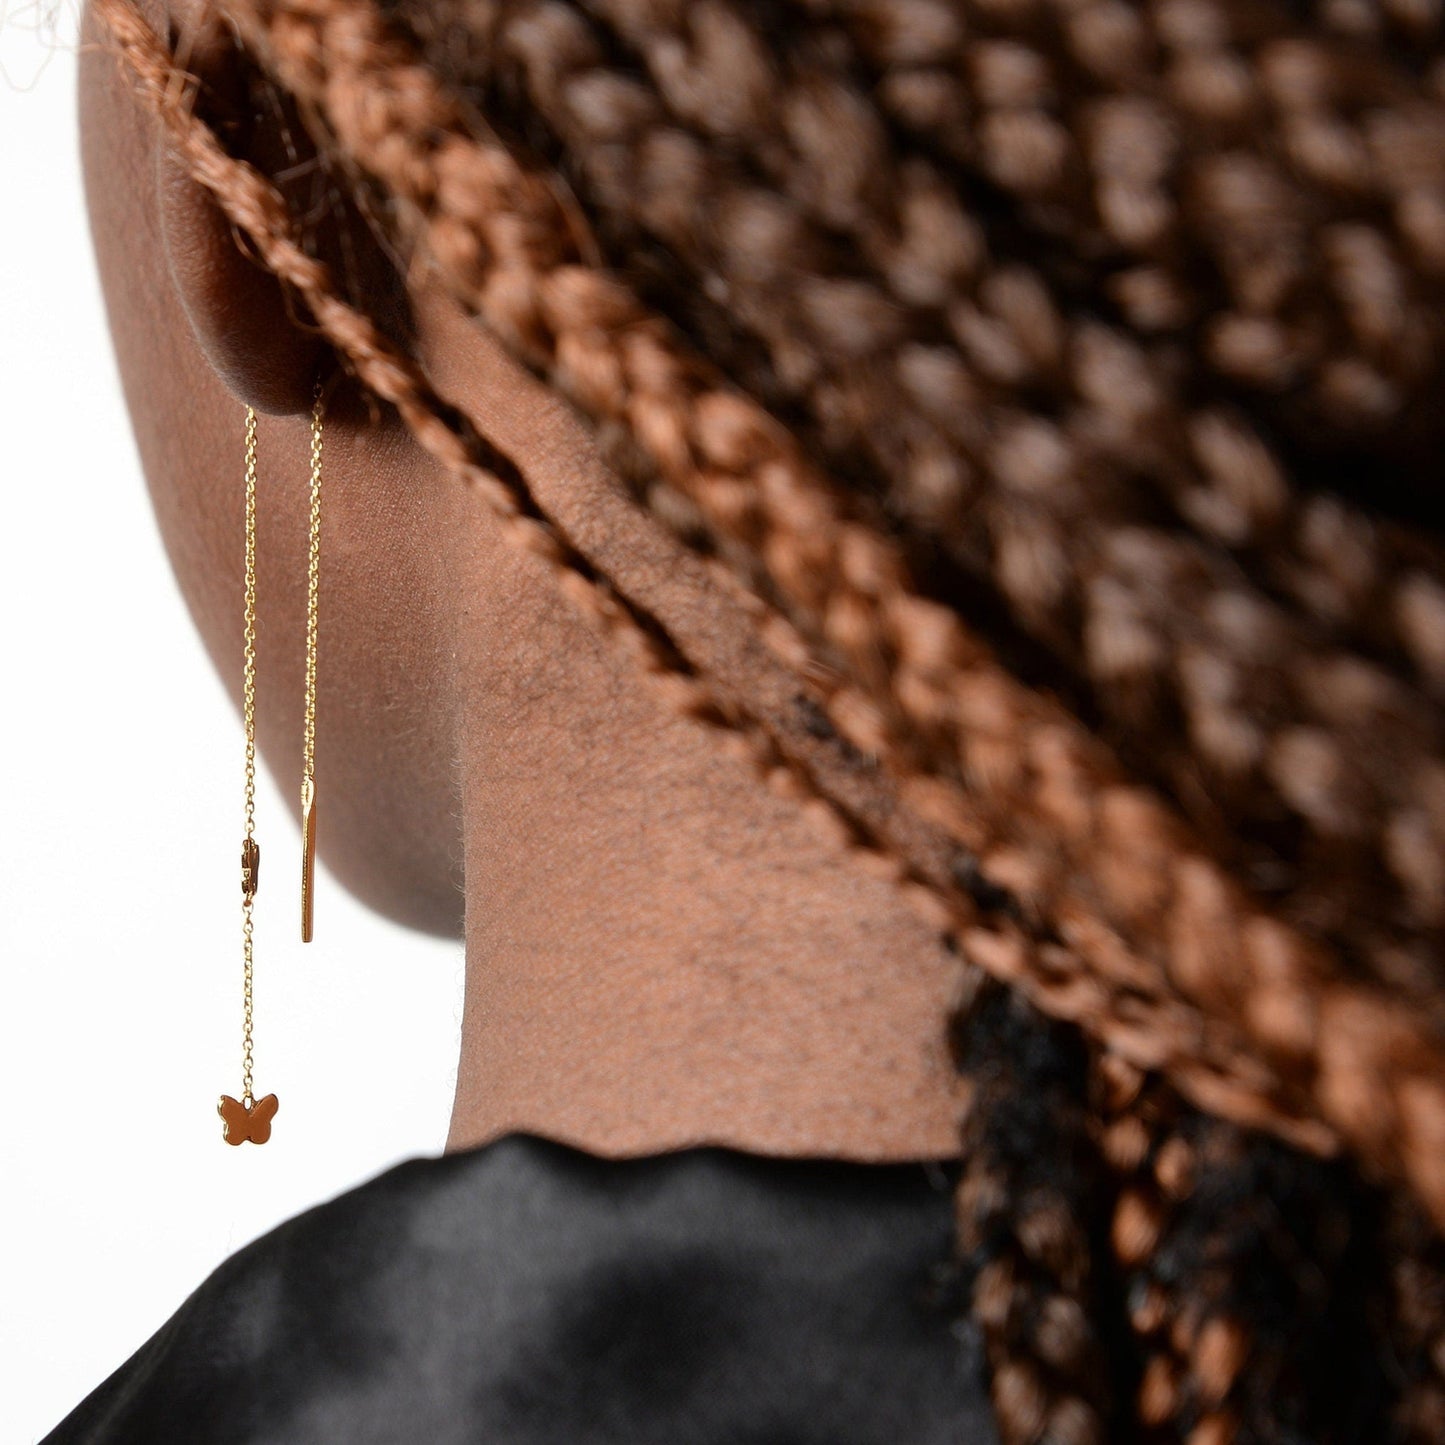 Chain Studs Earrings / Butterfly Chain Earrings / Threader Butterfly Earrings / Studs with Chain Earrings / Delicate Chain Earrings